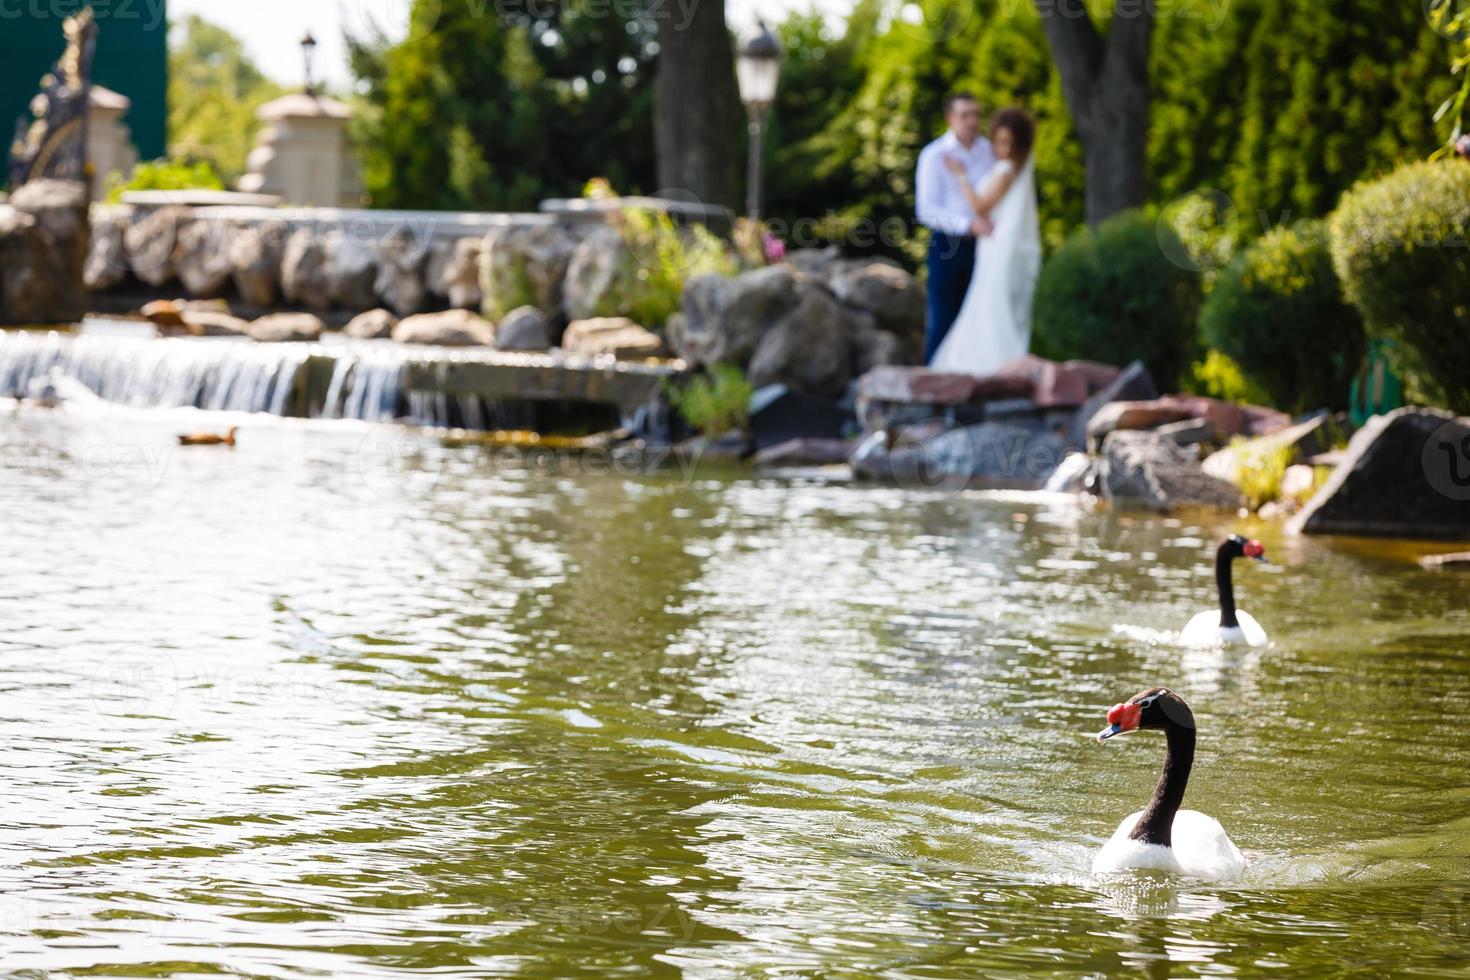 twee zwanen in de meer tegen de backdrop van de bruid en bruidegom foto